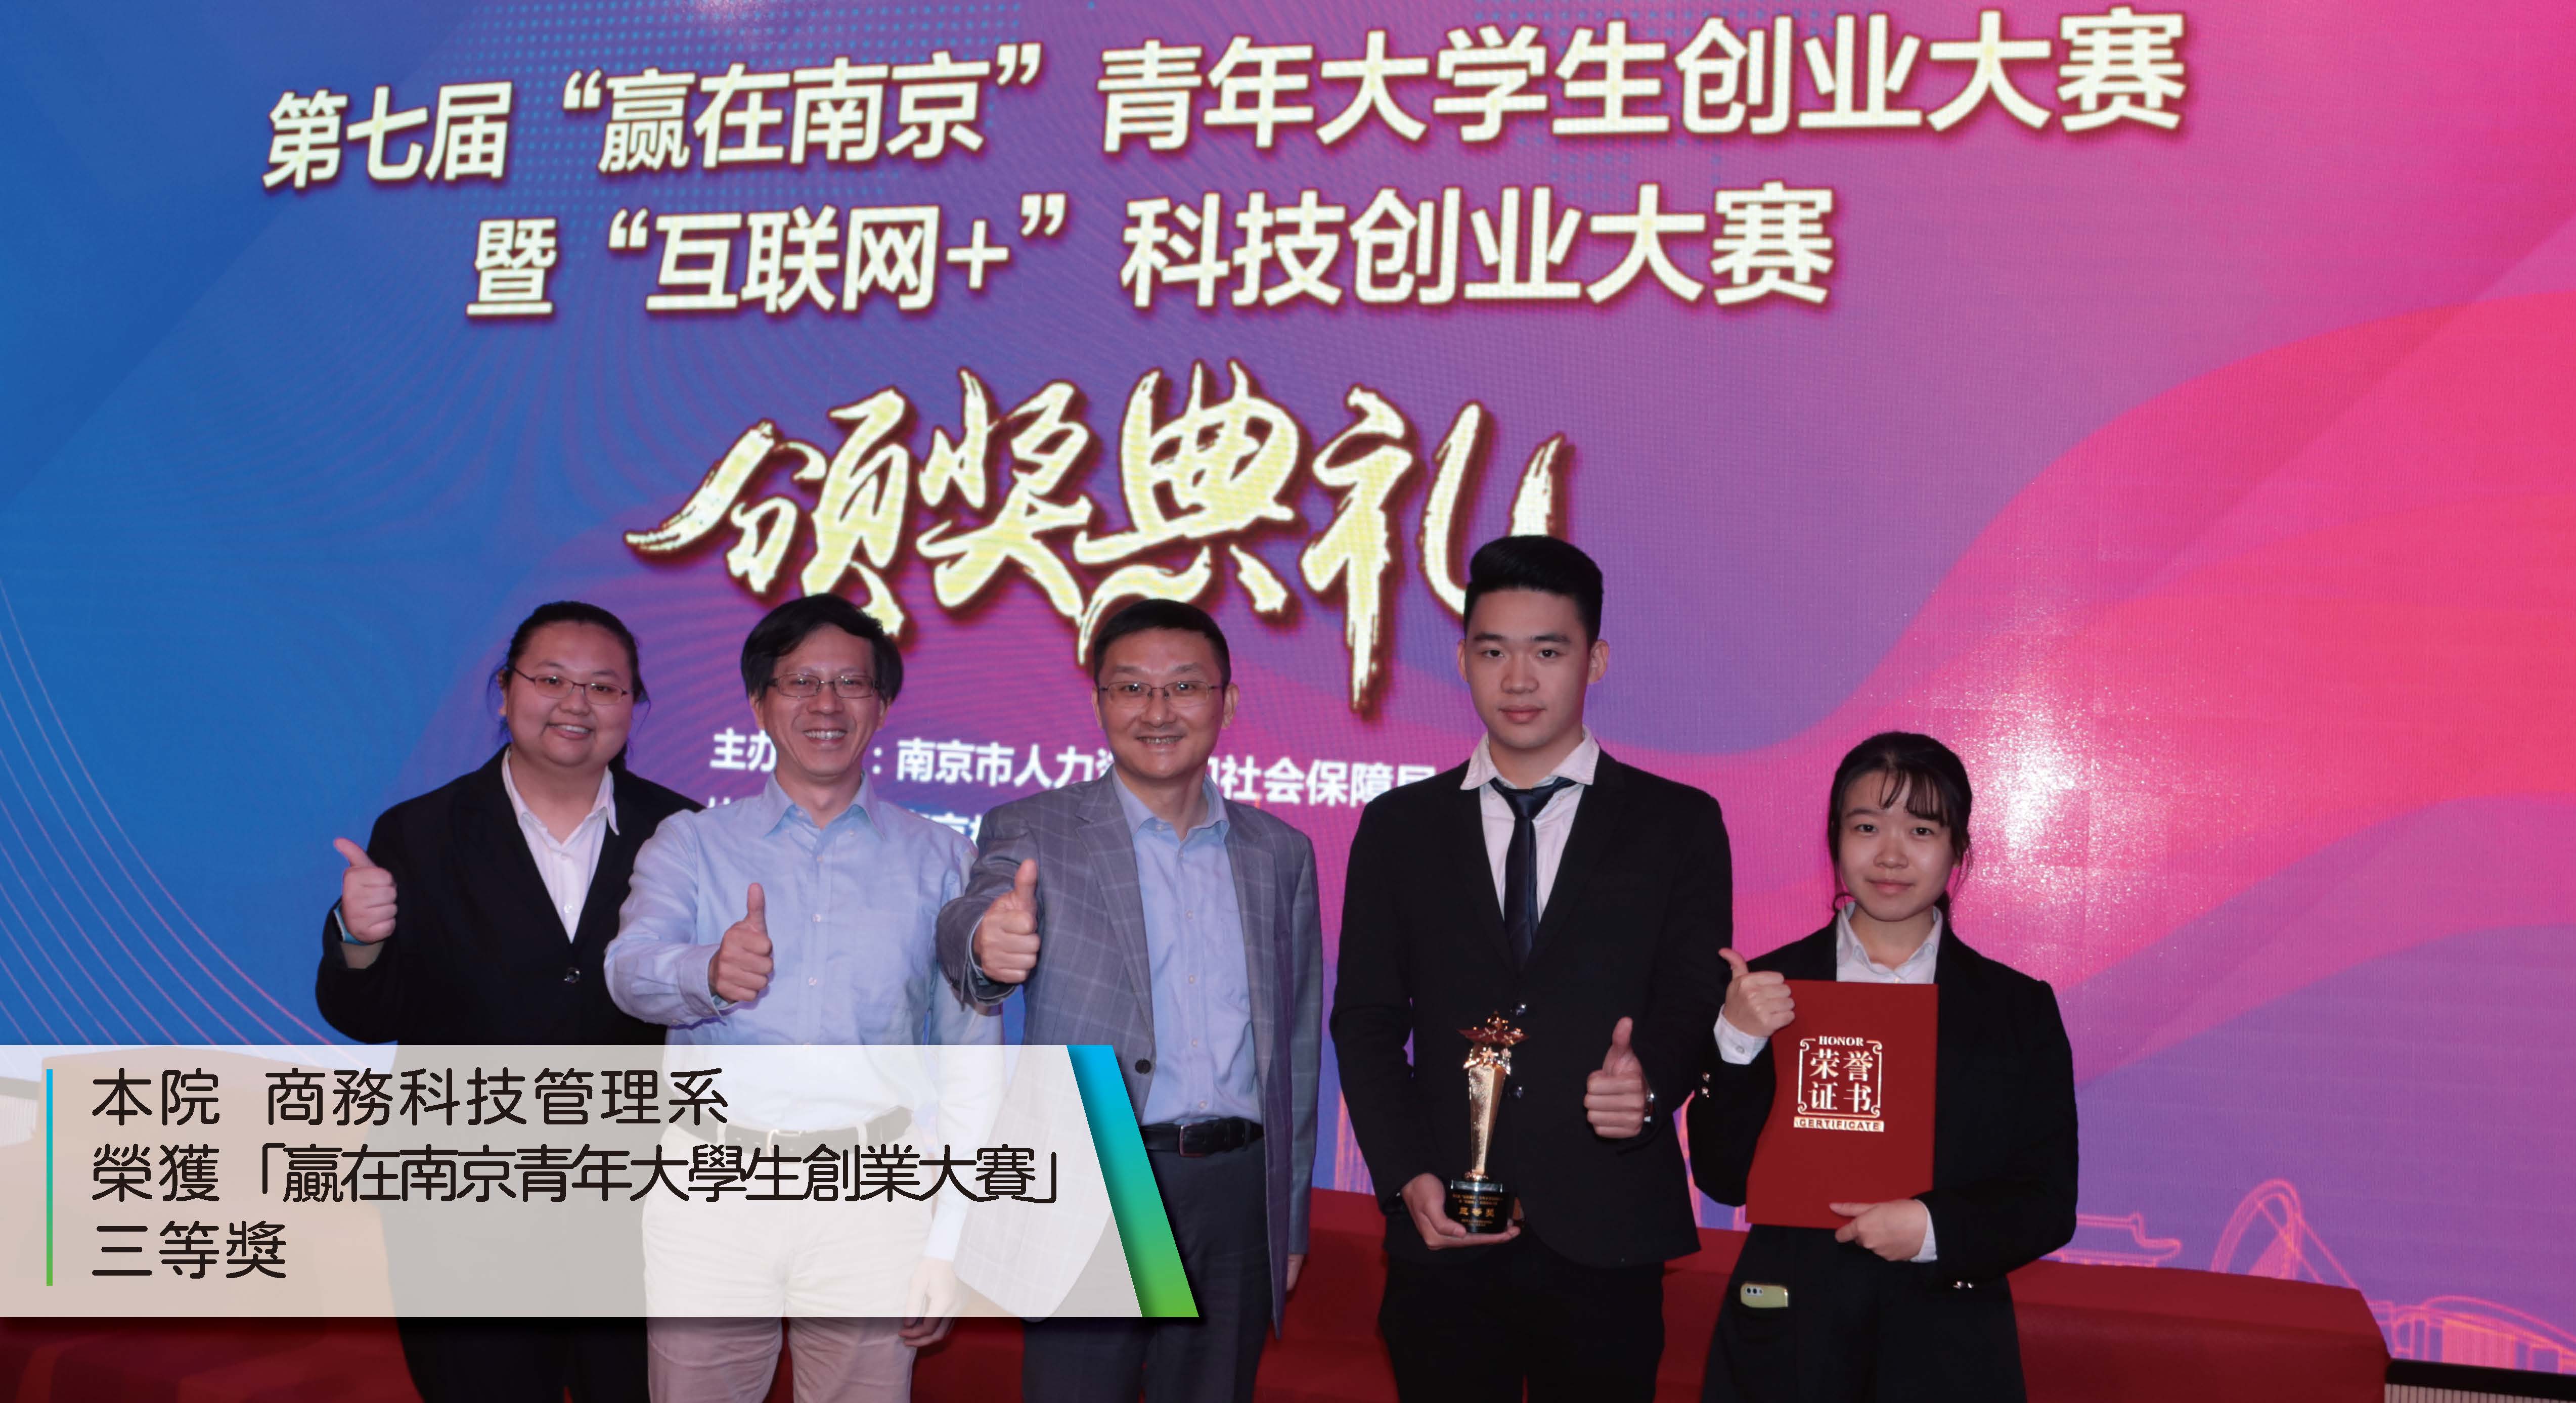 2019 商管 贏在南京青年大學生創業大賽 三等獎